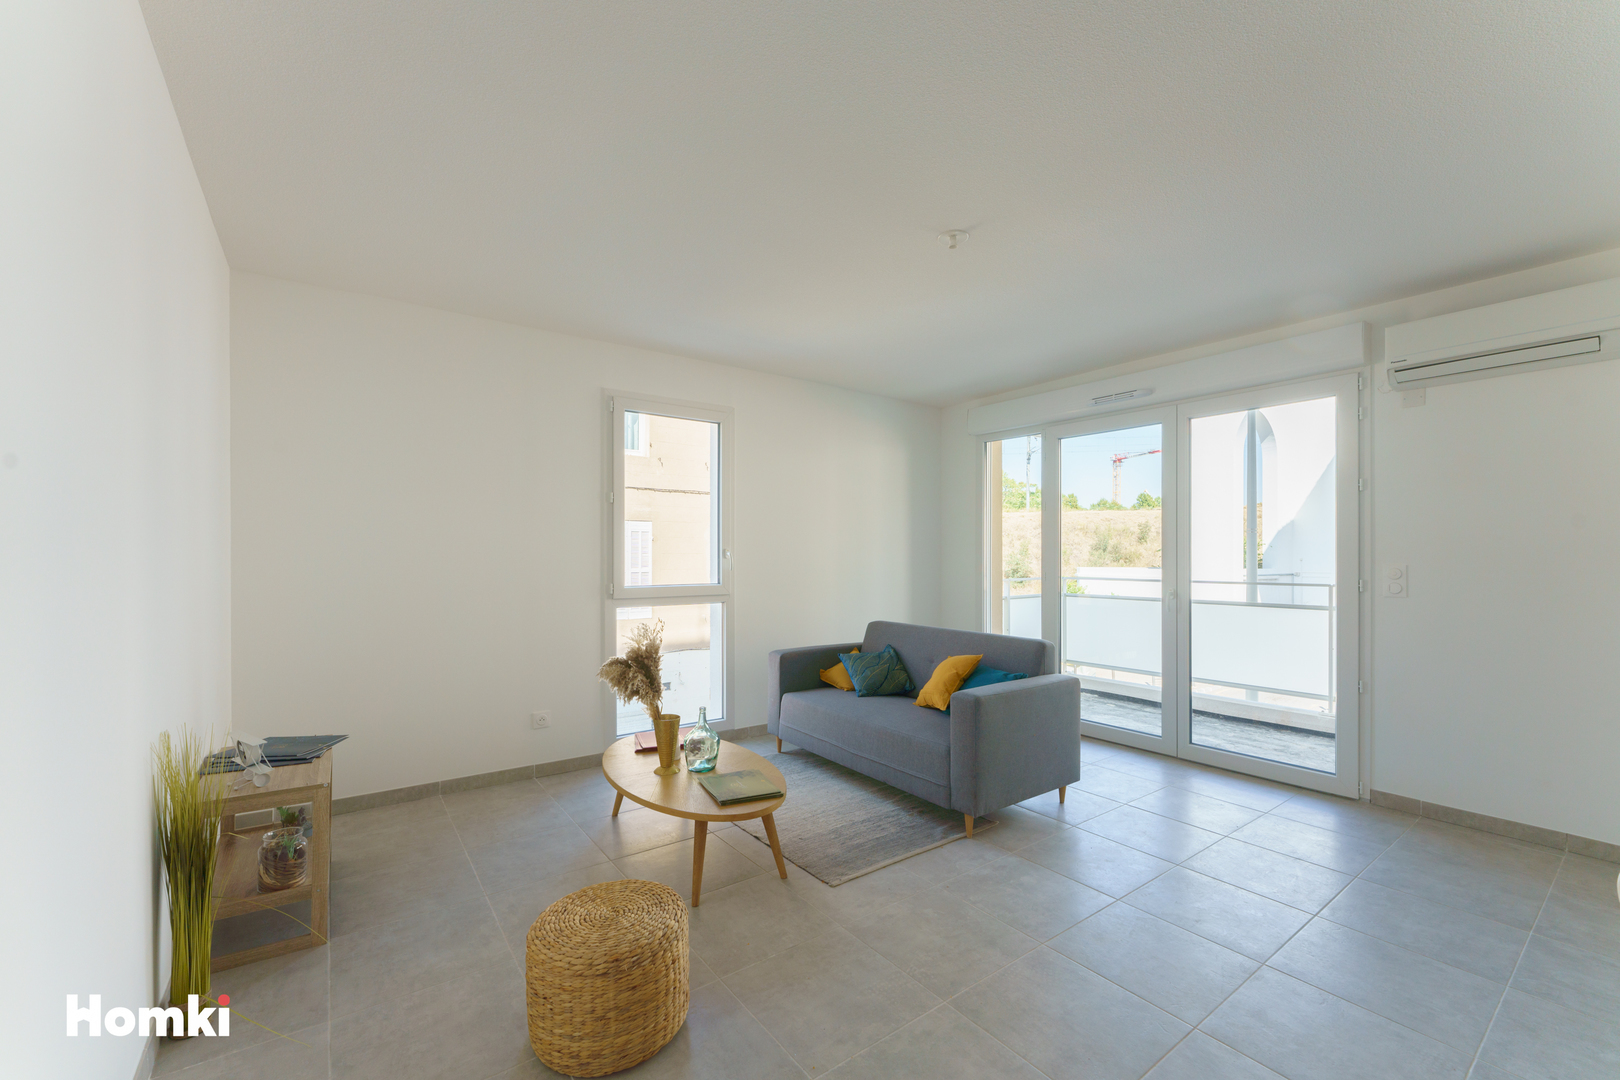 Homki - Vente Appartement  de 60.0 m² à Marseille 13010